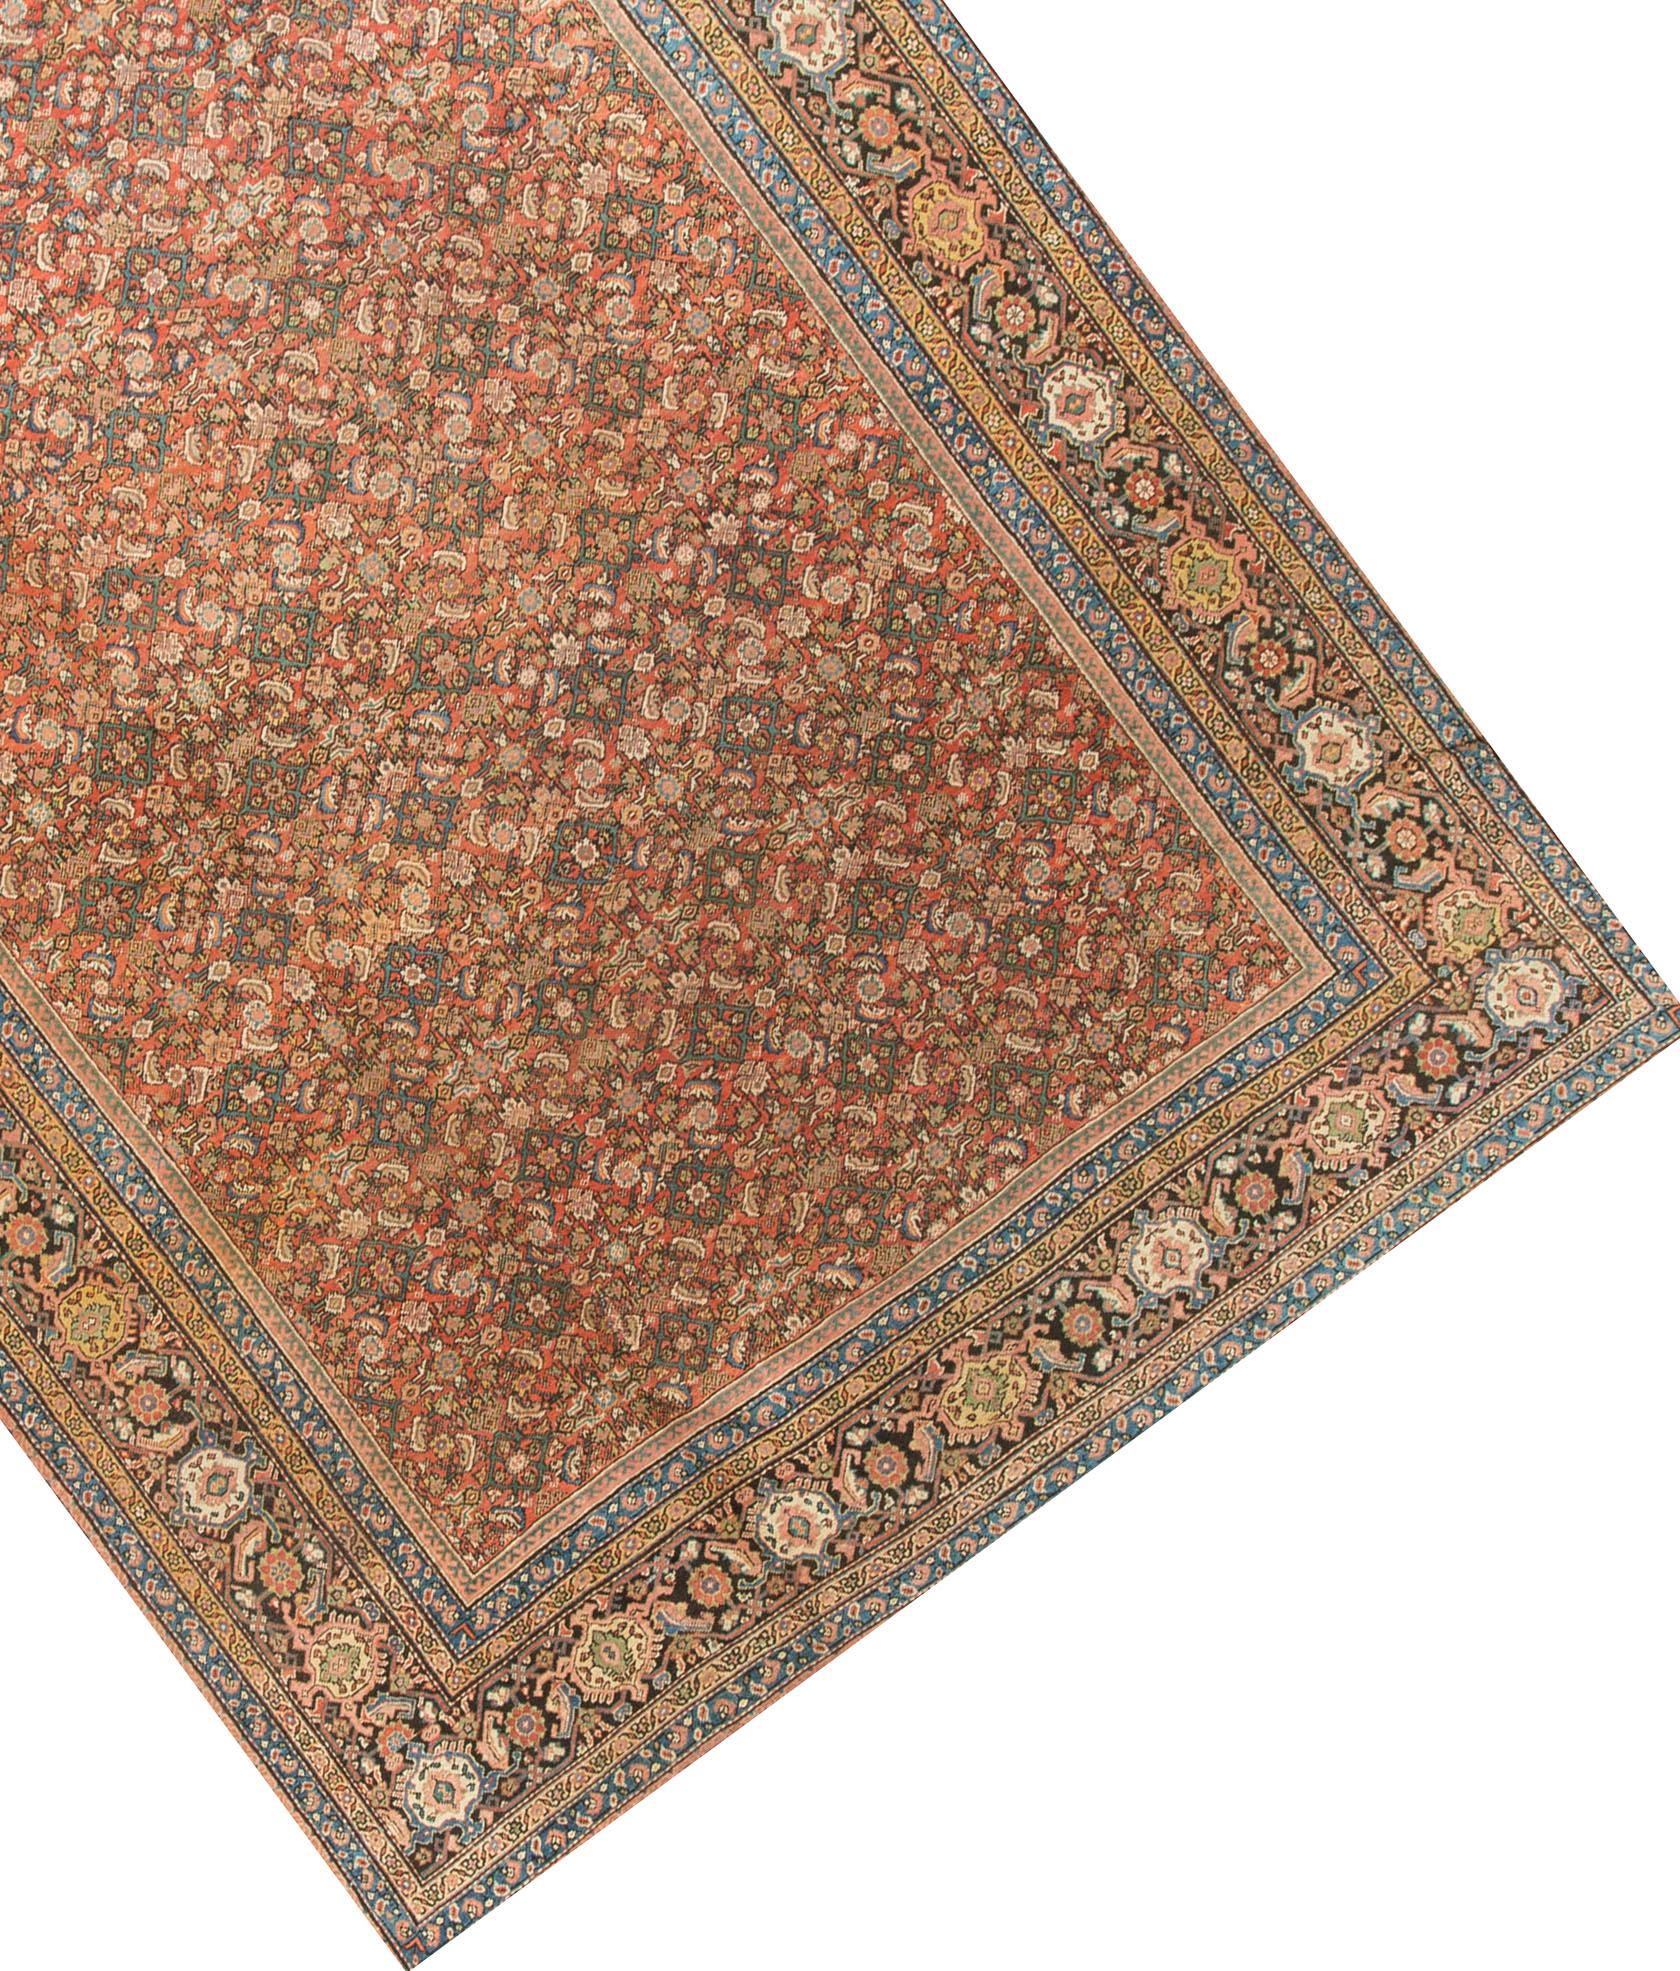 Ein antiker Sultanabad-Teppich mit einem Allover-Muster auf rotem Grund. Die Hauptbordüre ist mit schönen Blütenköpfen gefüllt, die von mehreren Schutzborten in Gelb, Hellblau und Rosa umgeben sind.